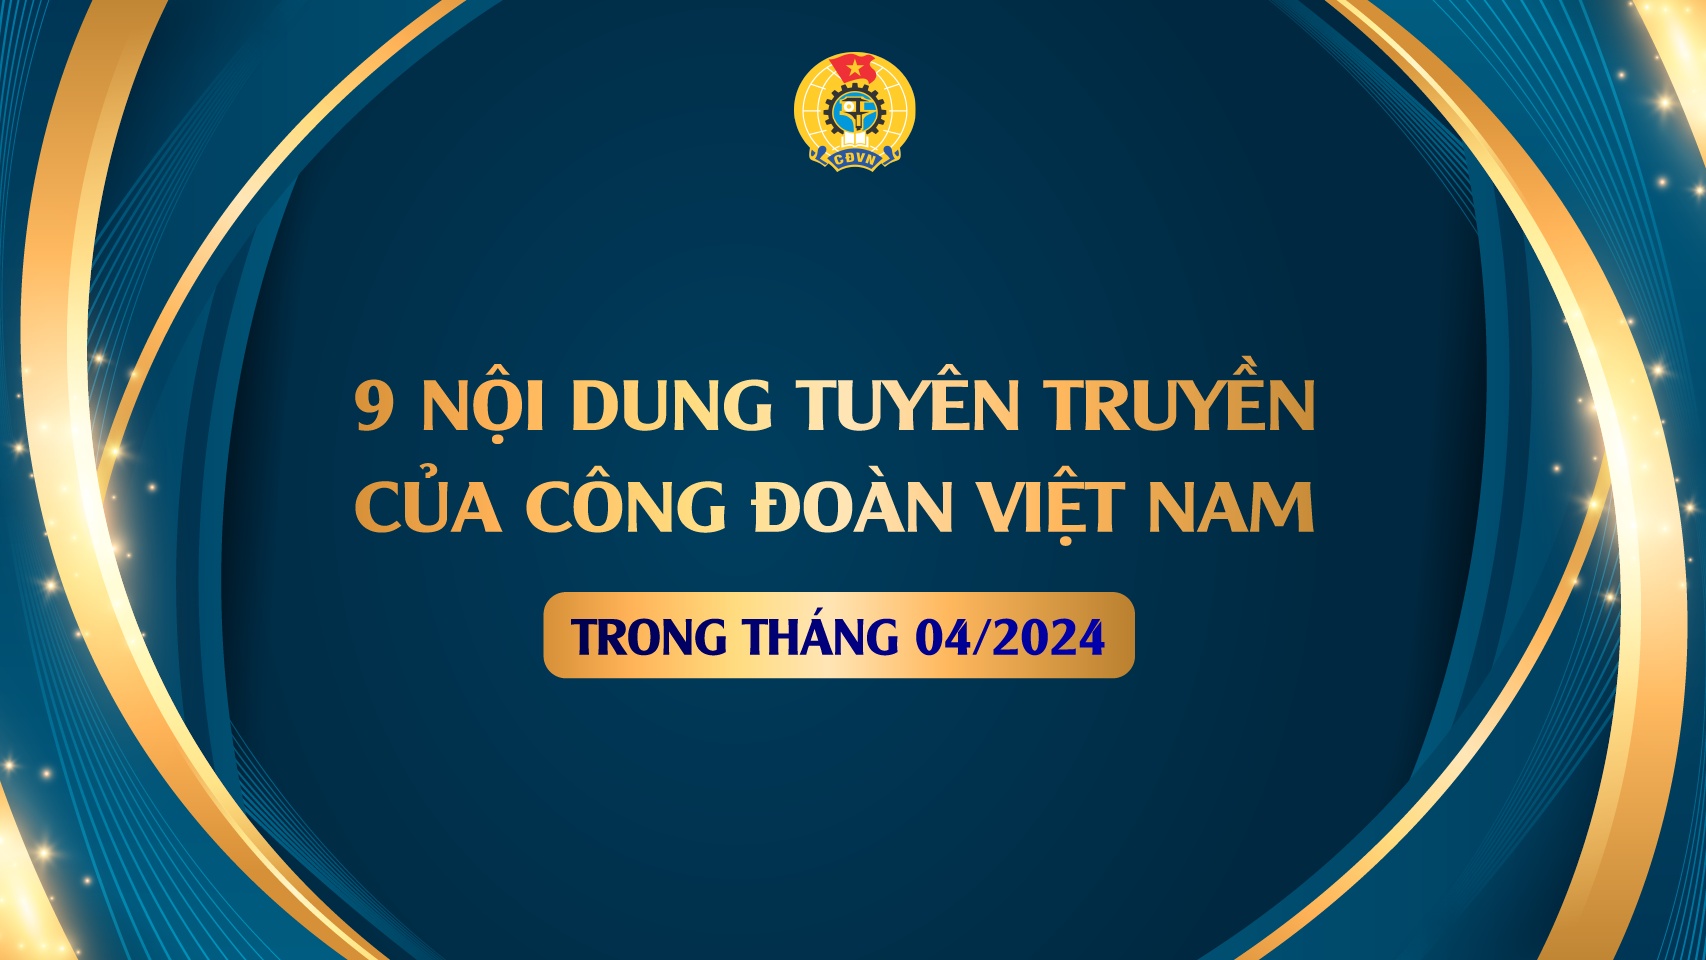 9 nội dung tuyên truyền của Công đoàn Việt Nam trong tháng 4/2024